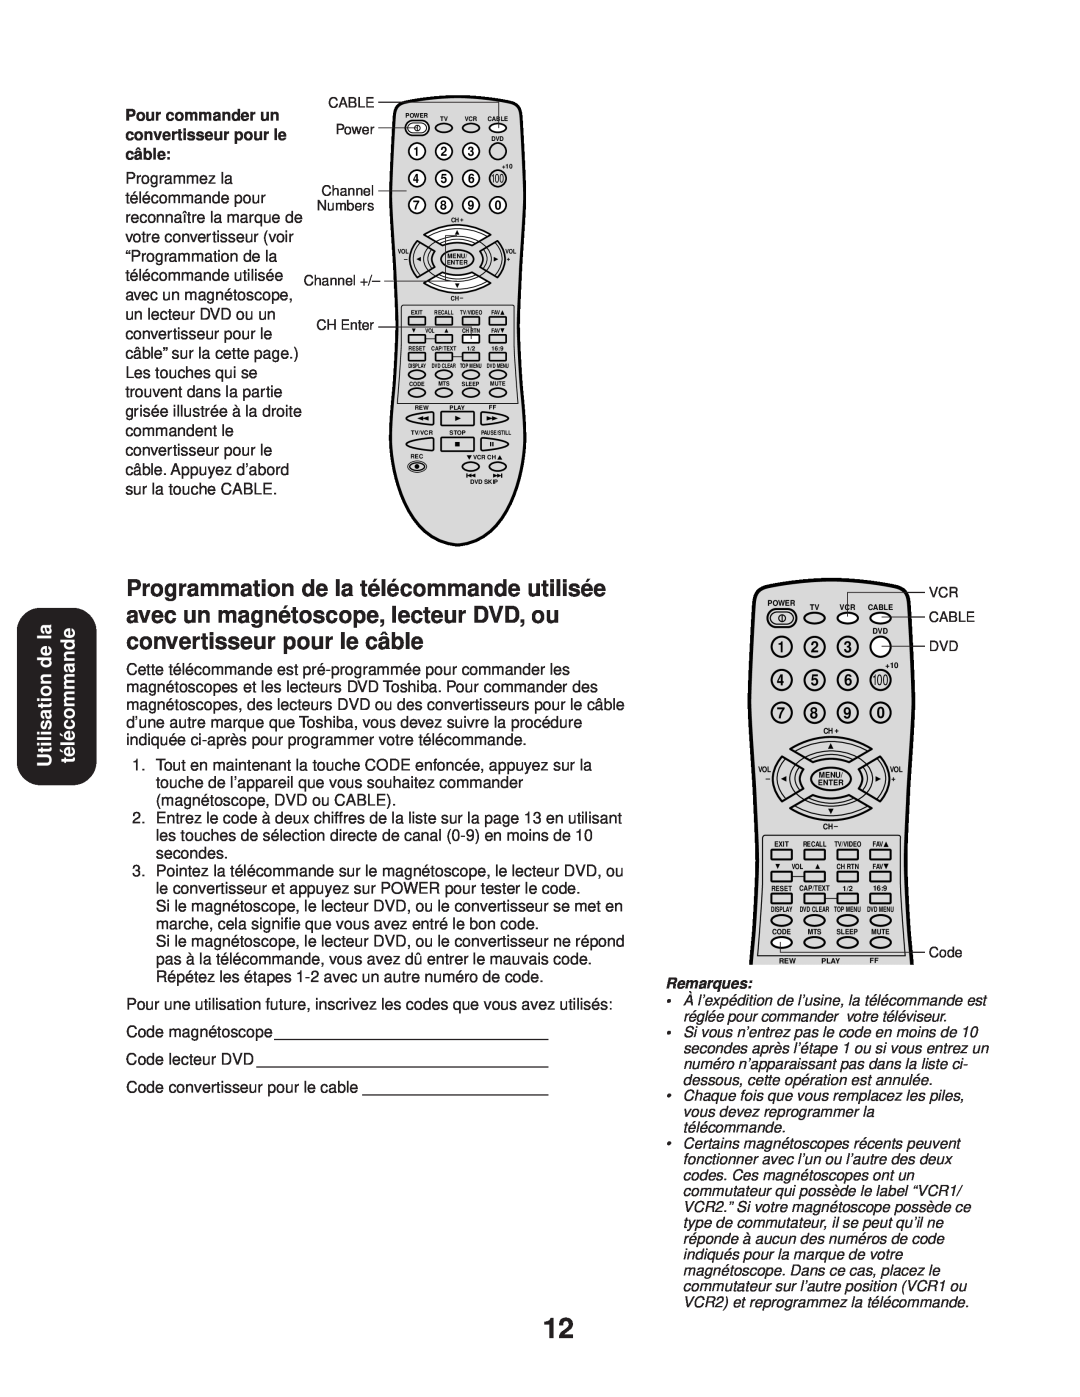 Toshiba 24AF43, 20AF43 appendix Utilisation de la télécommande, Pour commander un, convertisseur pour le, câble 